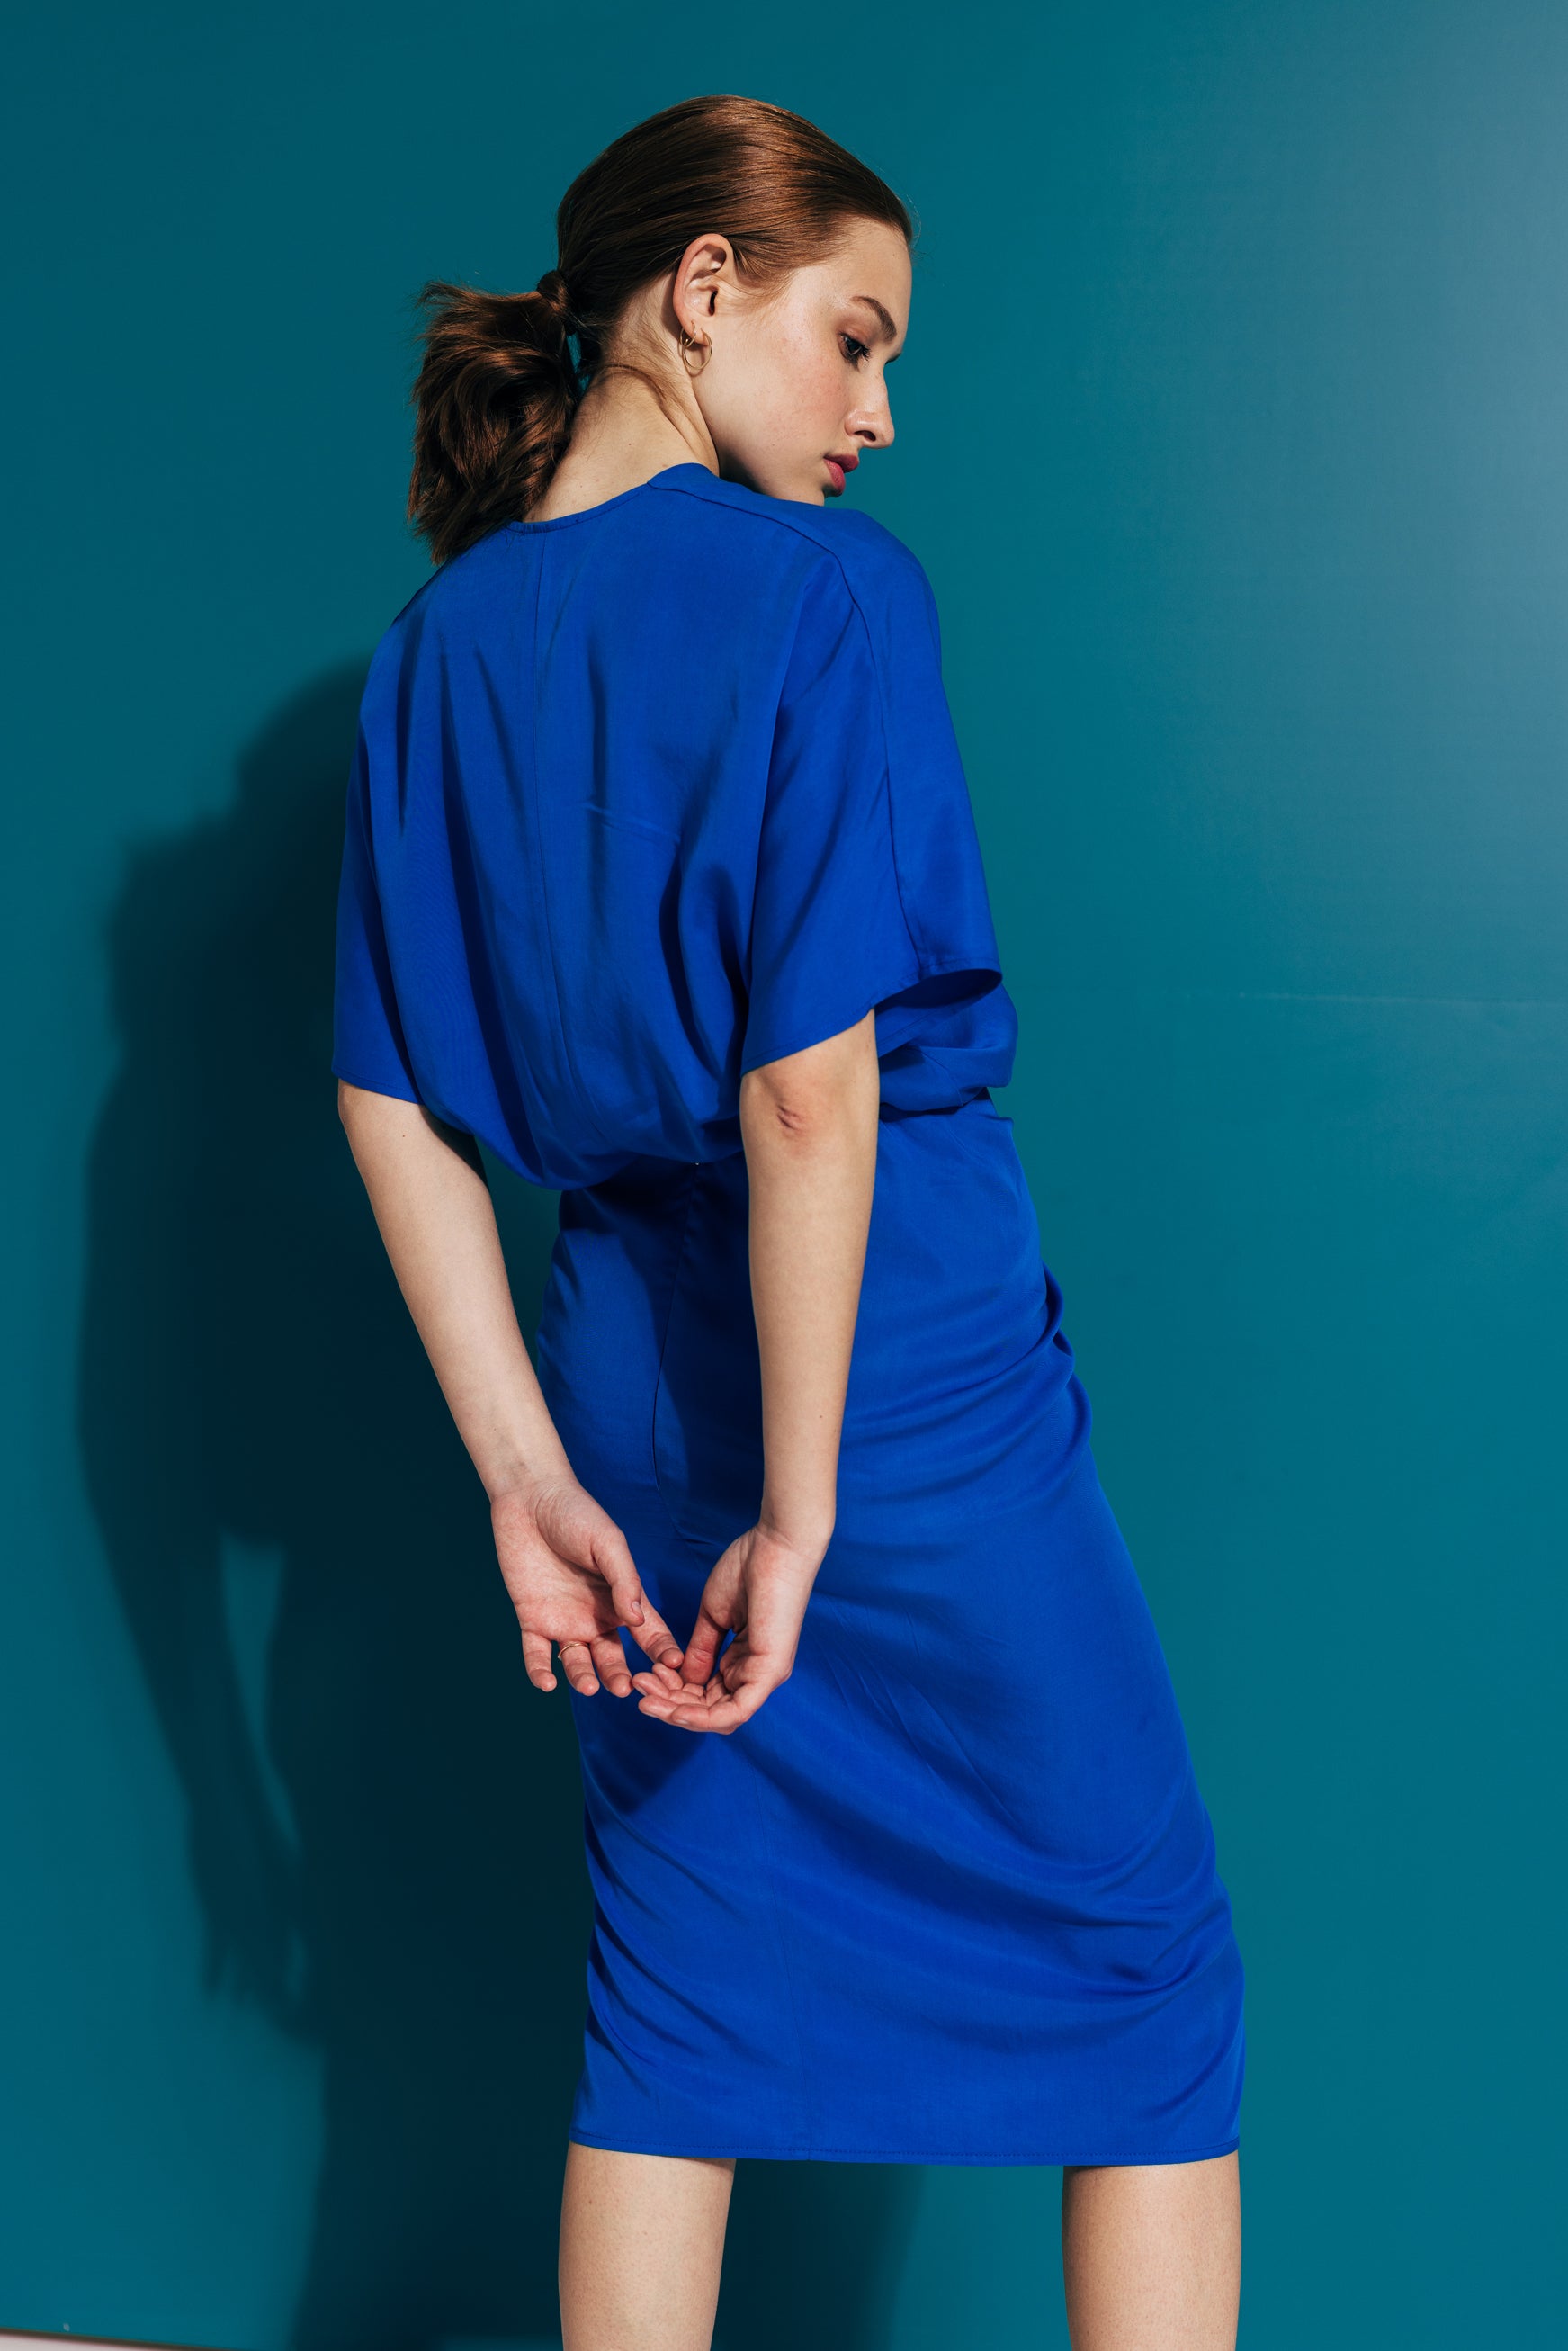 Миди хаљина од вискозе са чвором у краљевско плавој боји